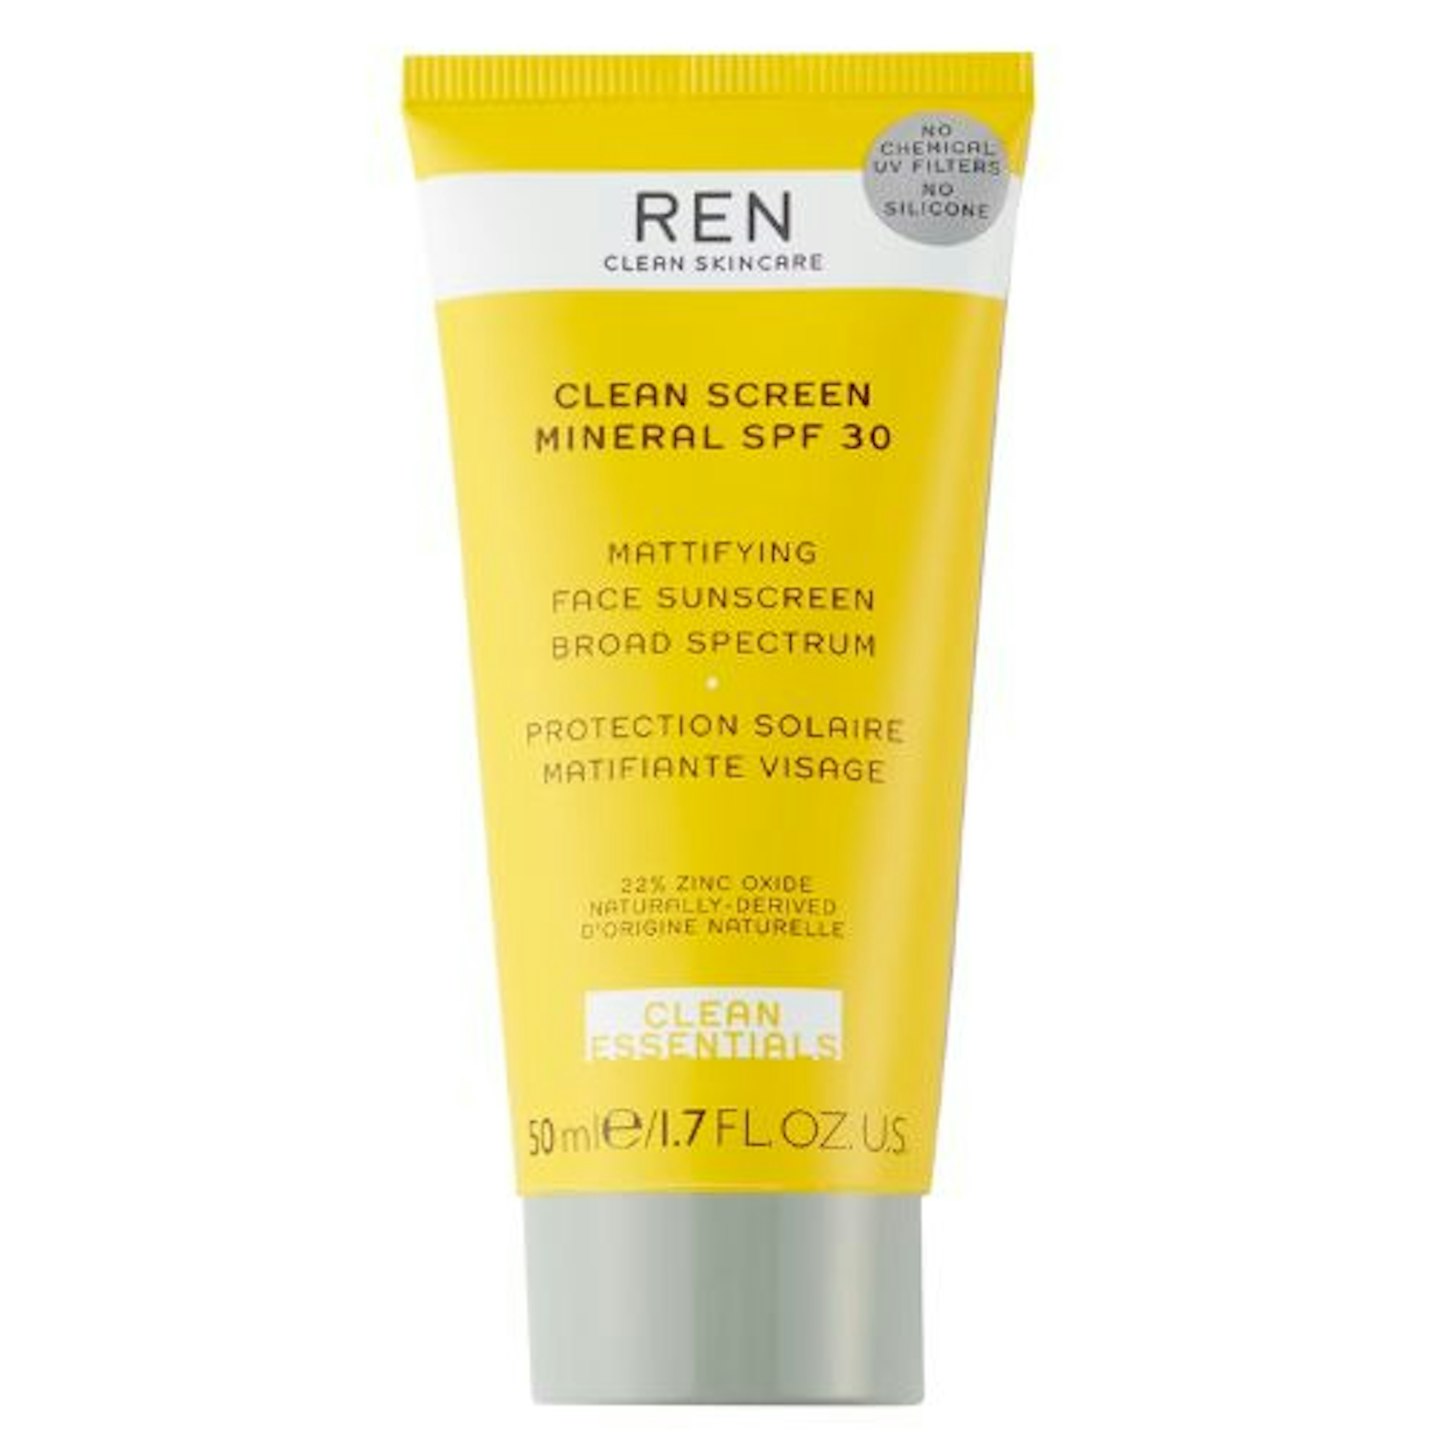 REN Clean Screen Mattifying Face Sunscreen SPF 30